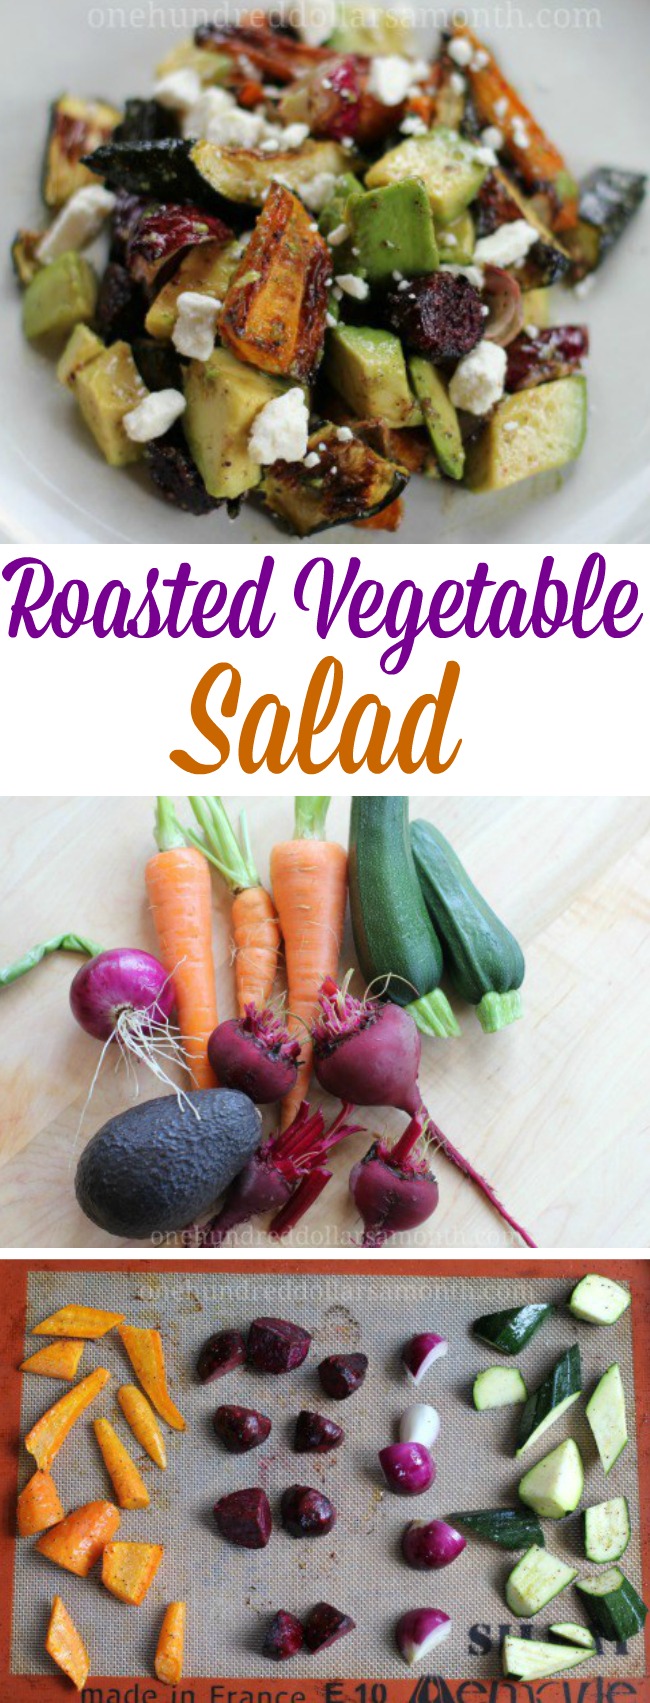 Easy Salad Recipes – Roasted Vegetable Salad